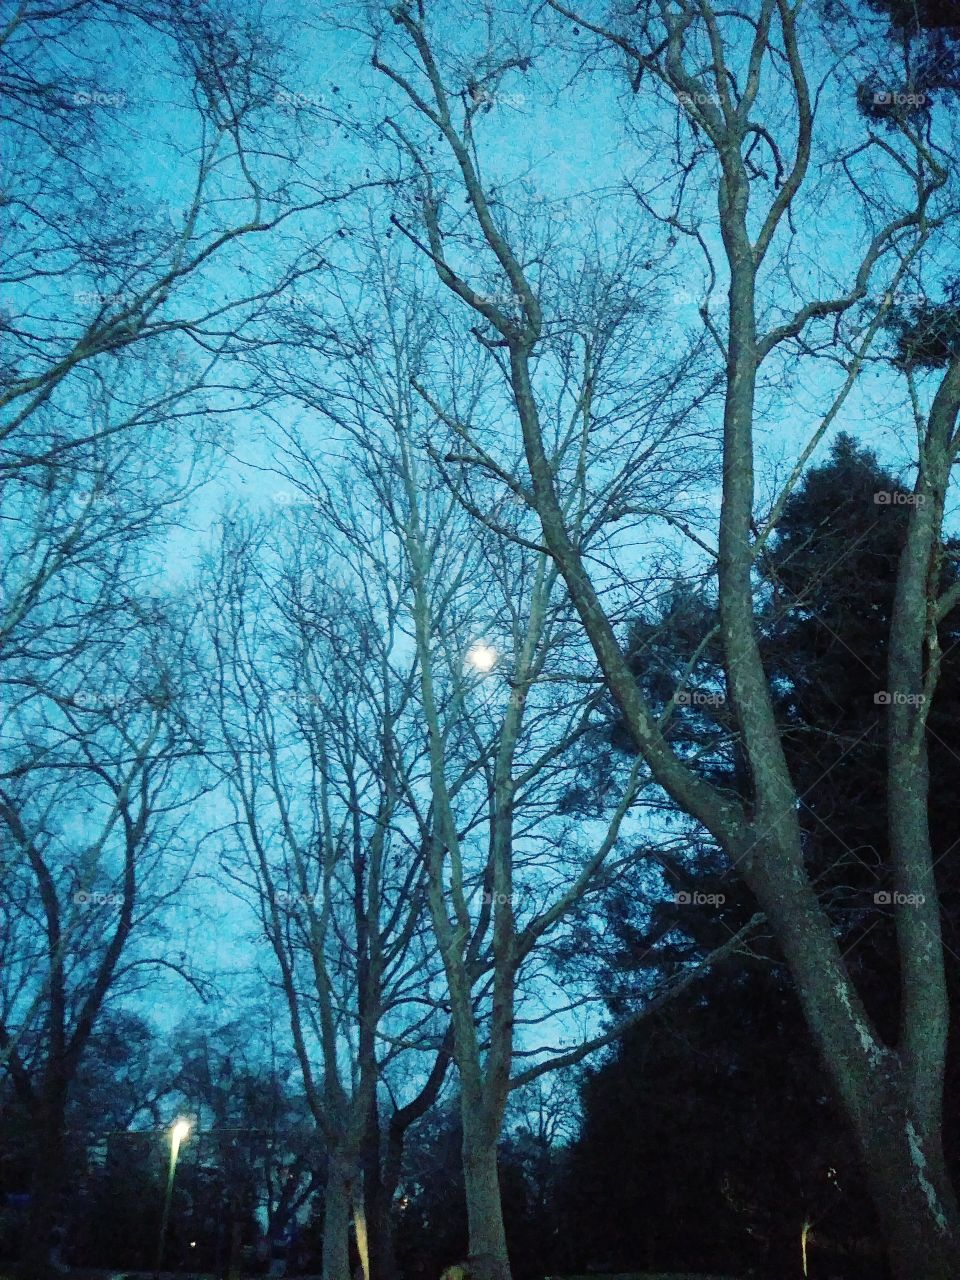 Full Moon over park